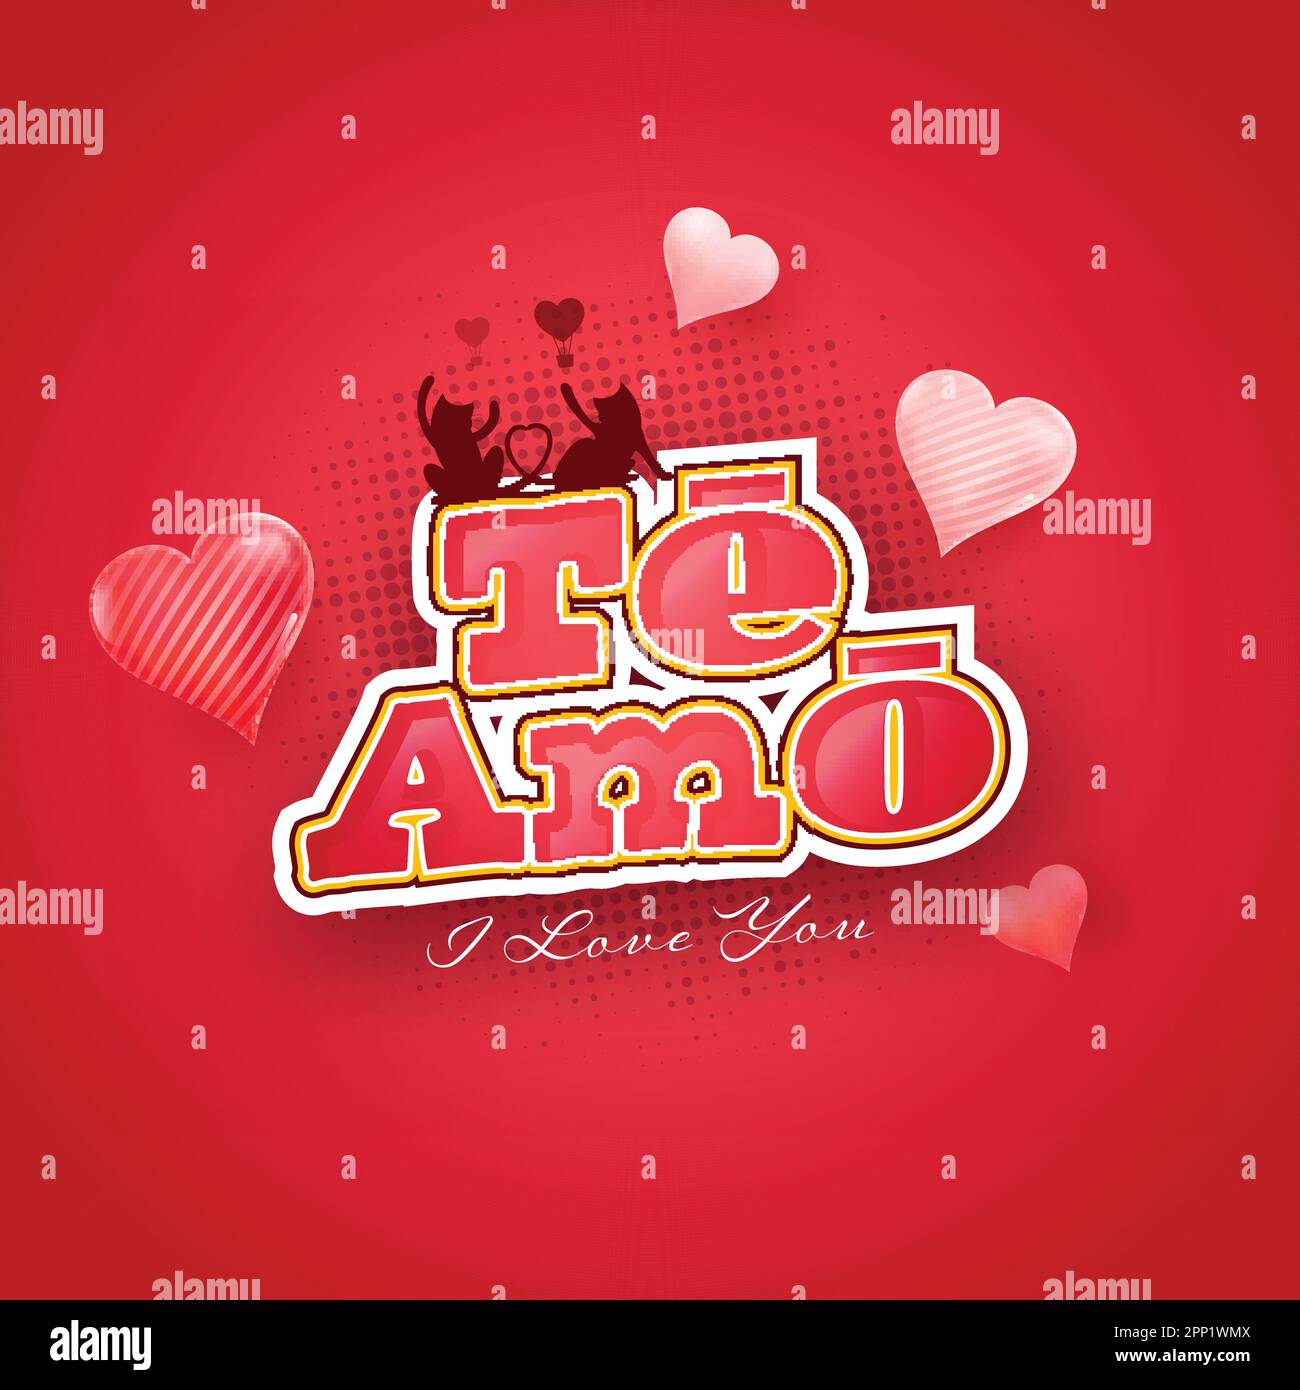 Sticker Style I Love You (TE AMO) Text in lateinischer Sprache mit Silhouette Cat Ehepaar und Herzballons auf rotem Halftone-Effekt-Hintergrund. Stock Vektor